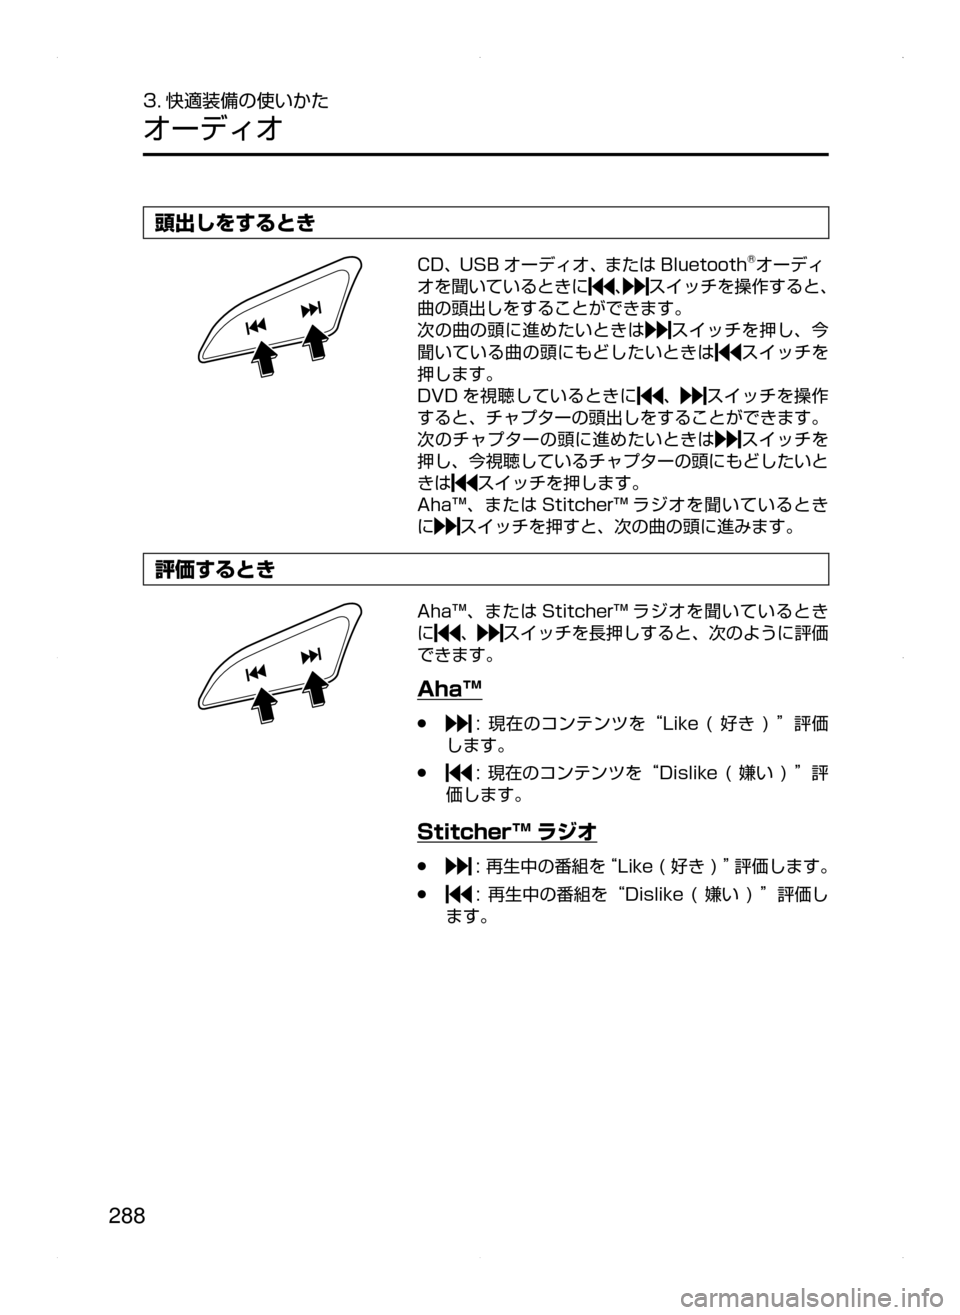 MAZDA MODEL AXELA HYBRID 2015  アクセラハイブリッド｜取扱説明書 (in Japanese)  288
3. 快適装備の使いかた
オーディオ
頭出しをするとき
CD､ USB オーディオ､ または Bluetooth®オーディ
オを聞いているときに
､スイッチを操作する